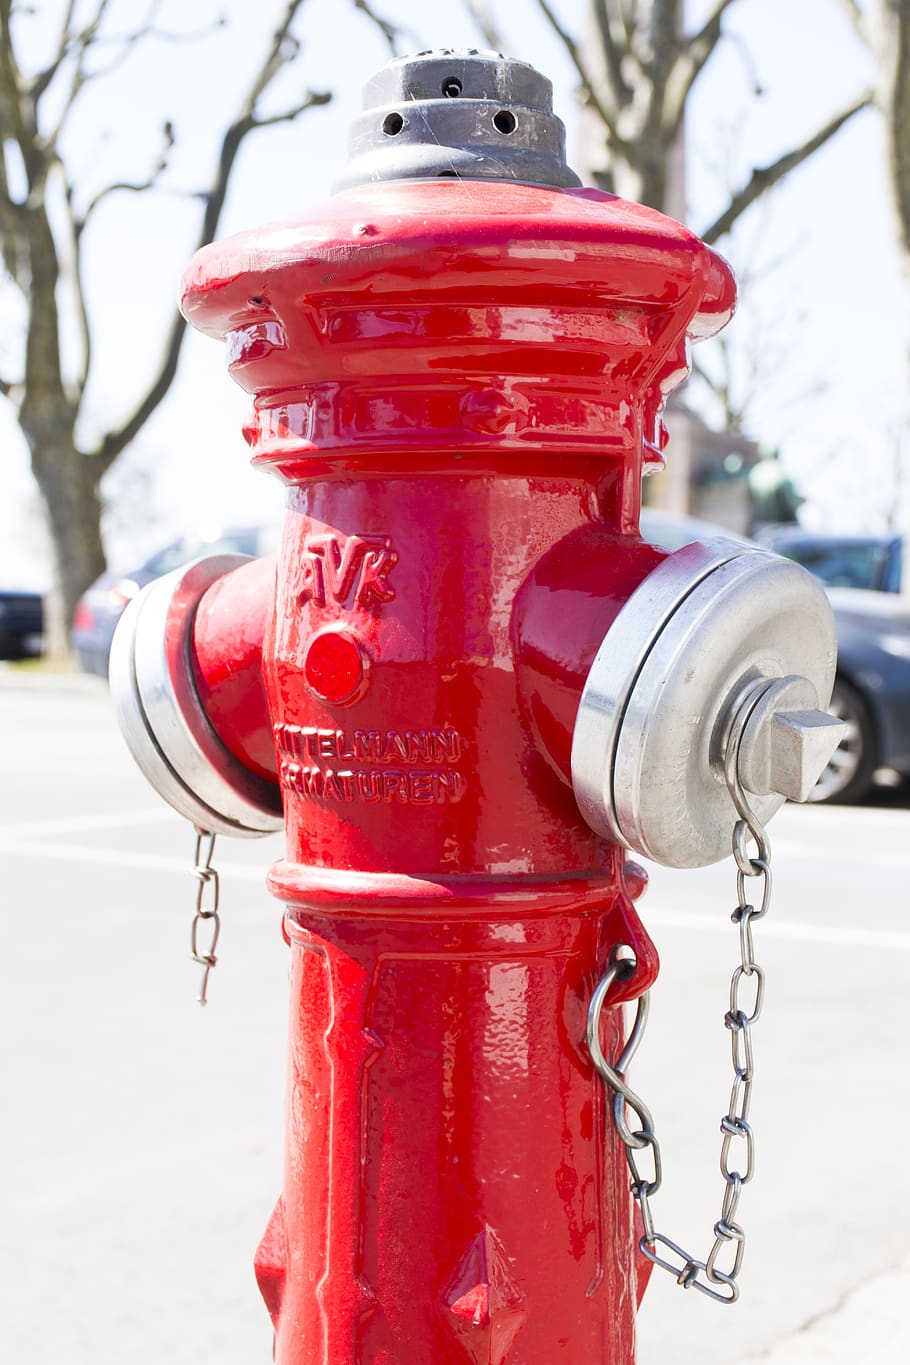 hidrante, agua, acero, válvula, rojo, boca de incendios, protección, seguridad, enfoque en primer plano, metal